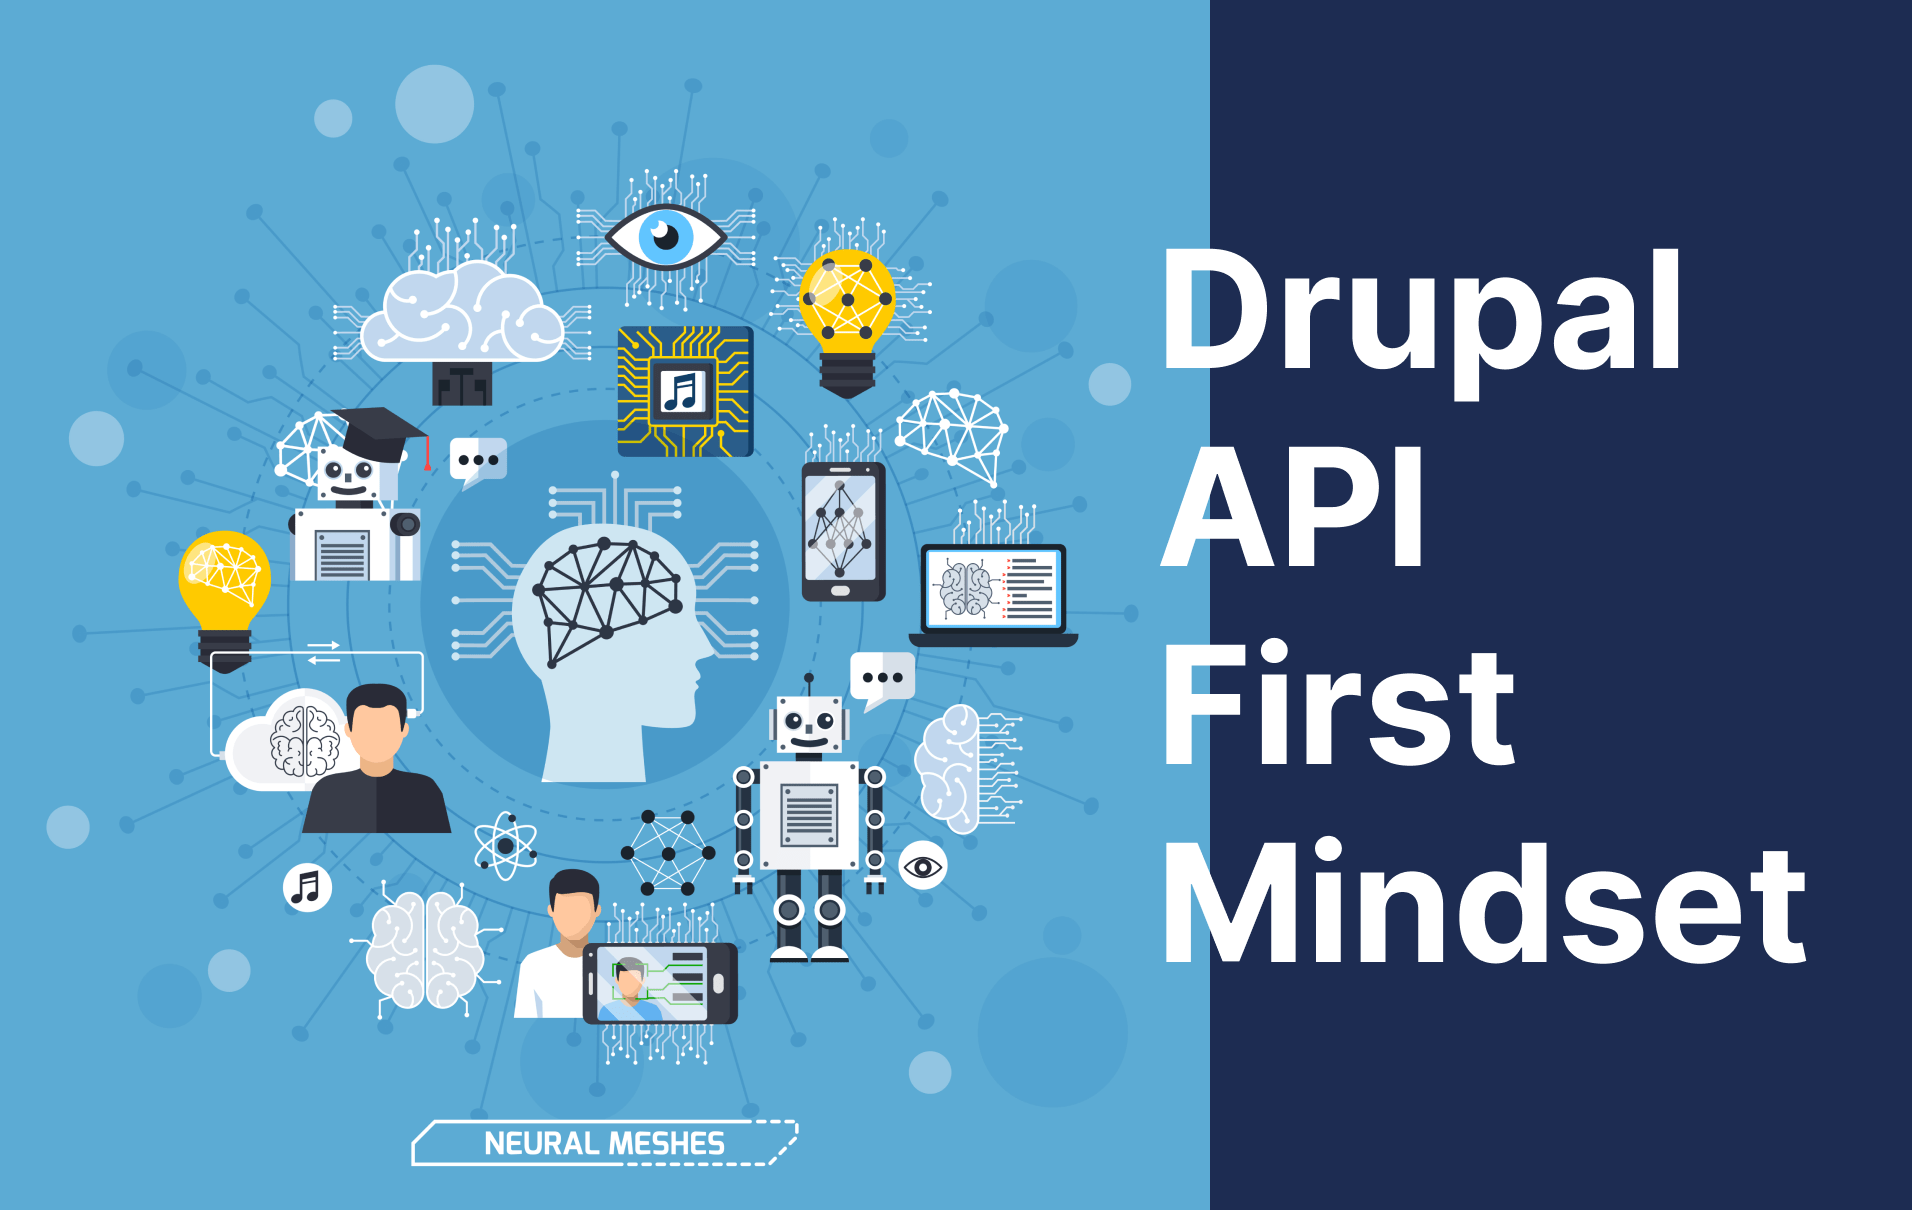 Drupal API First Mindset image